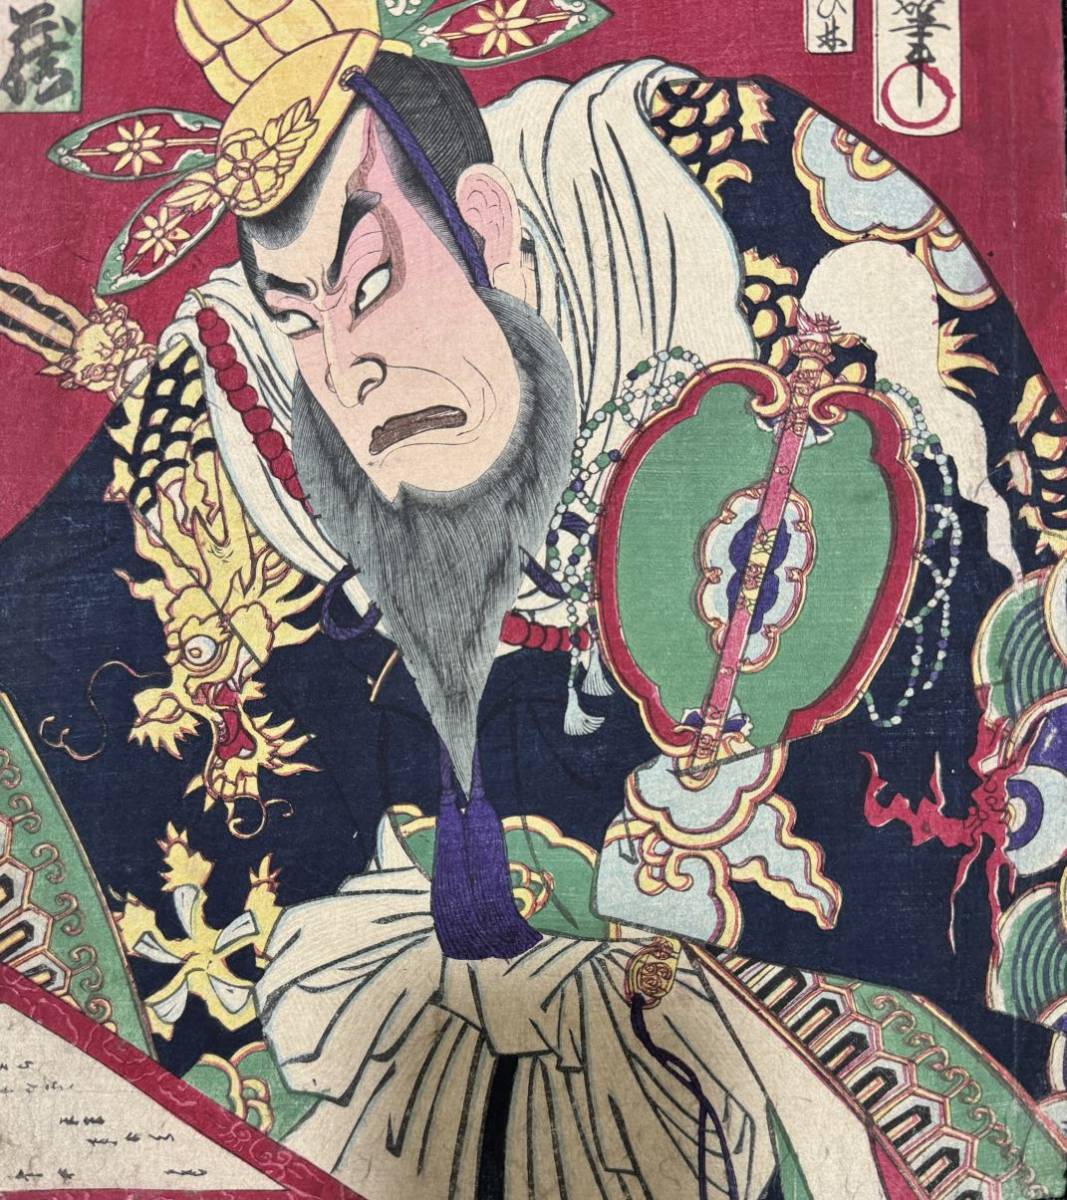  Meiji период / подлинный произведение .. страна . подлинный товар картина в жанре укиё гравюра на дереве сцена из кабуки изображение актеров газонная трава .... большой размер три листов .. обратная сторона удар .8